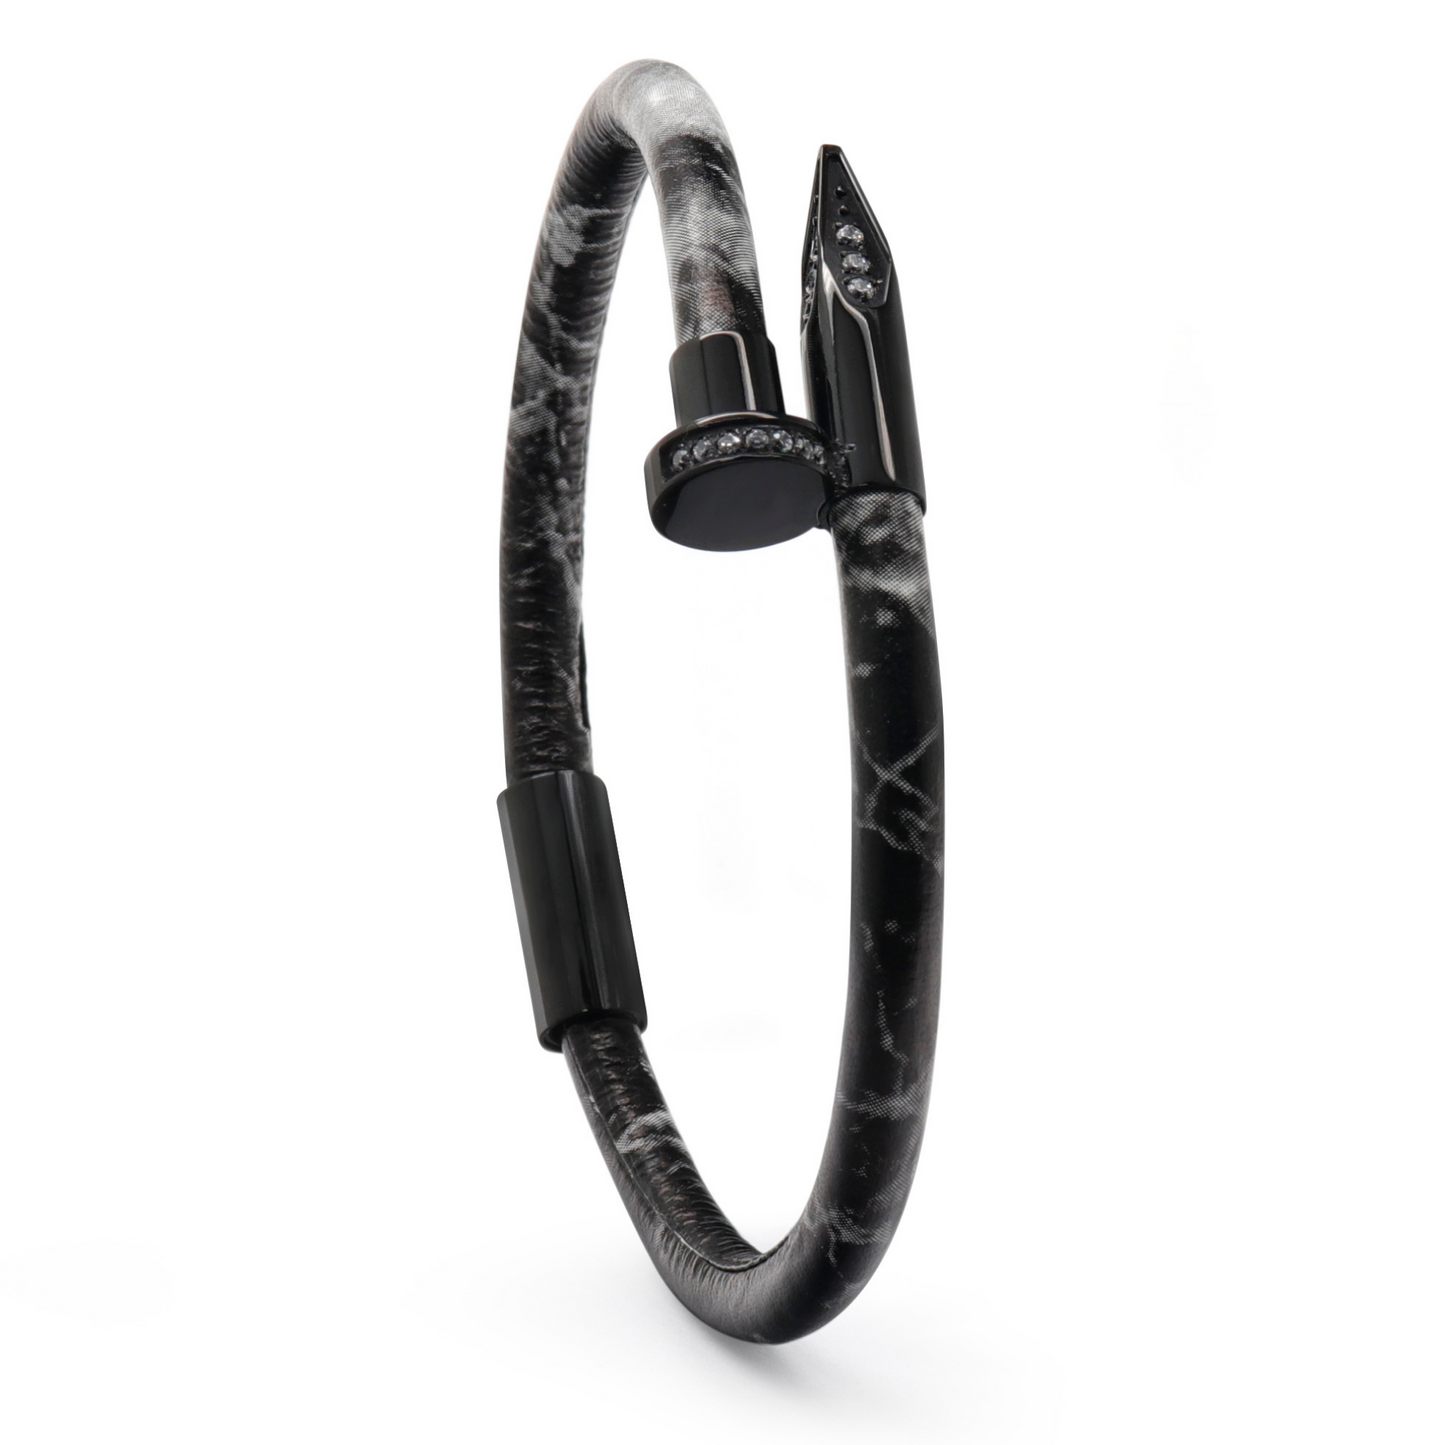 Bracelet Clou Noir avec Diamant Zircon - Cuir Noir